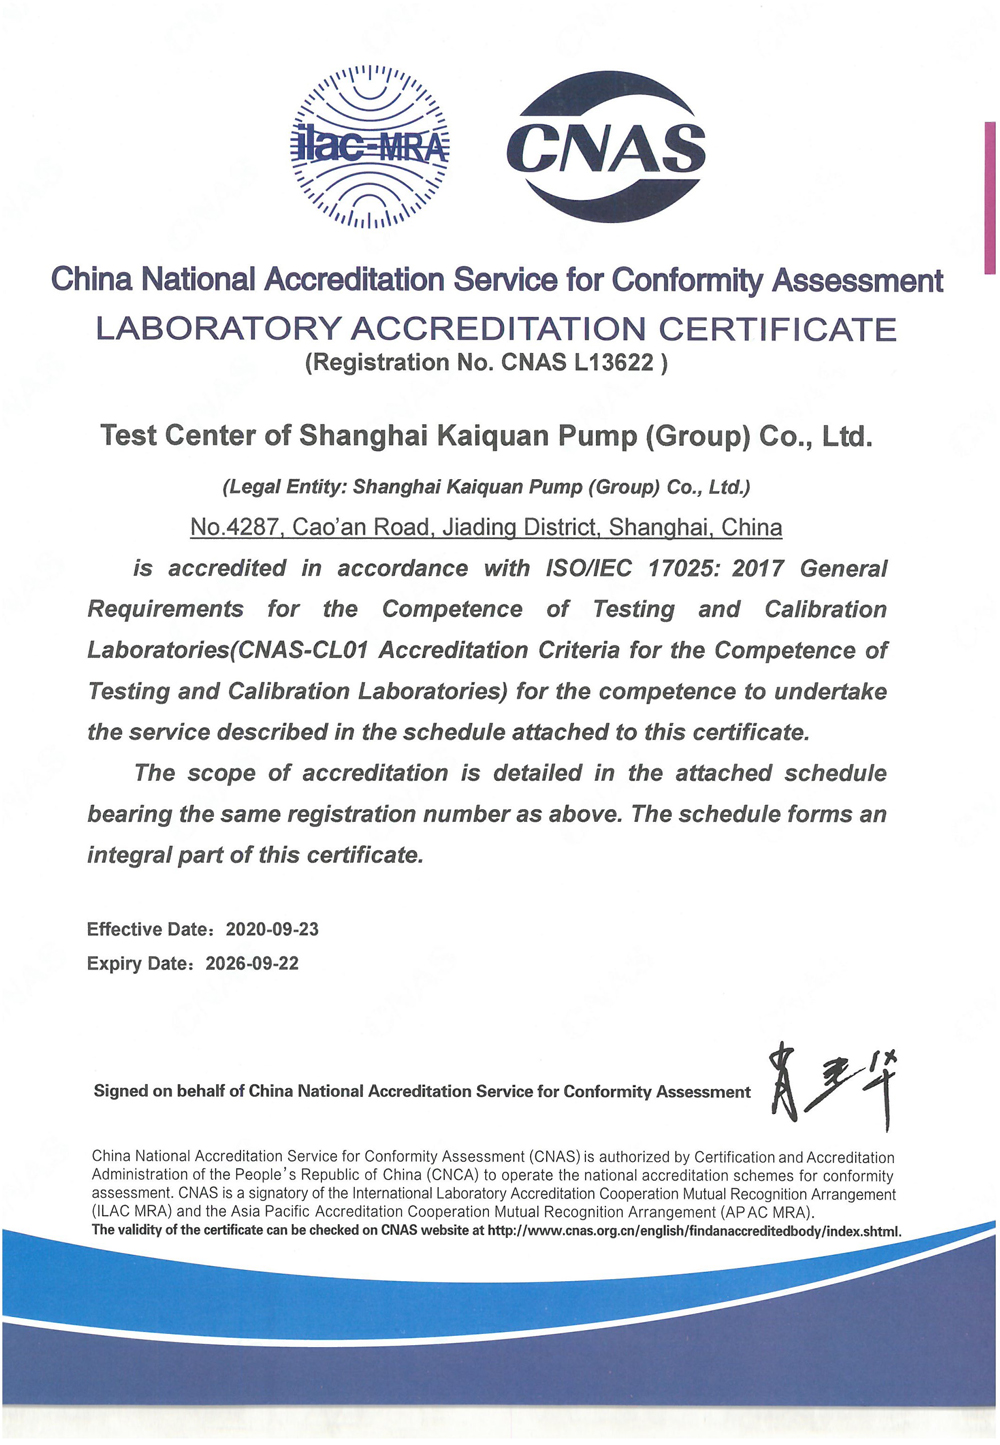 上海凱泉-CNAS證書英文版-有效期至20260922